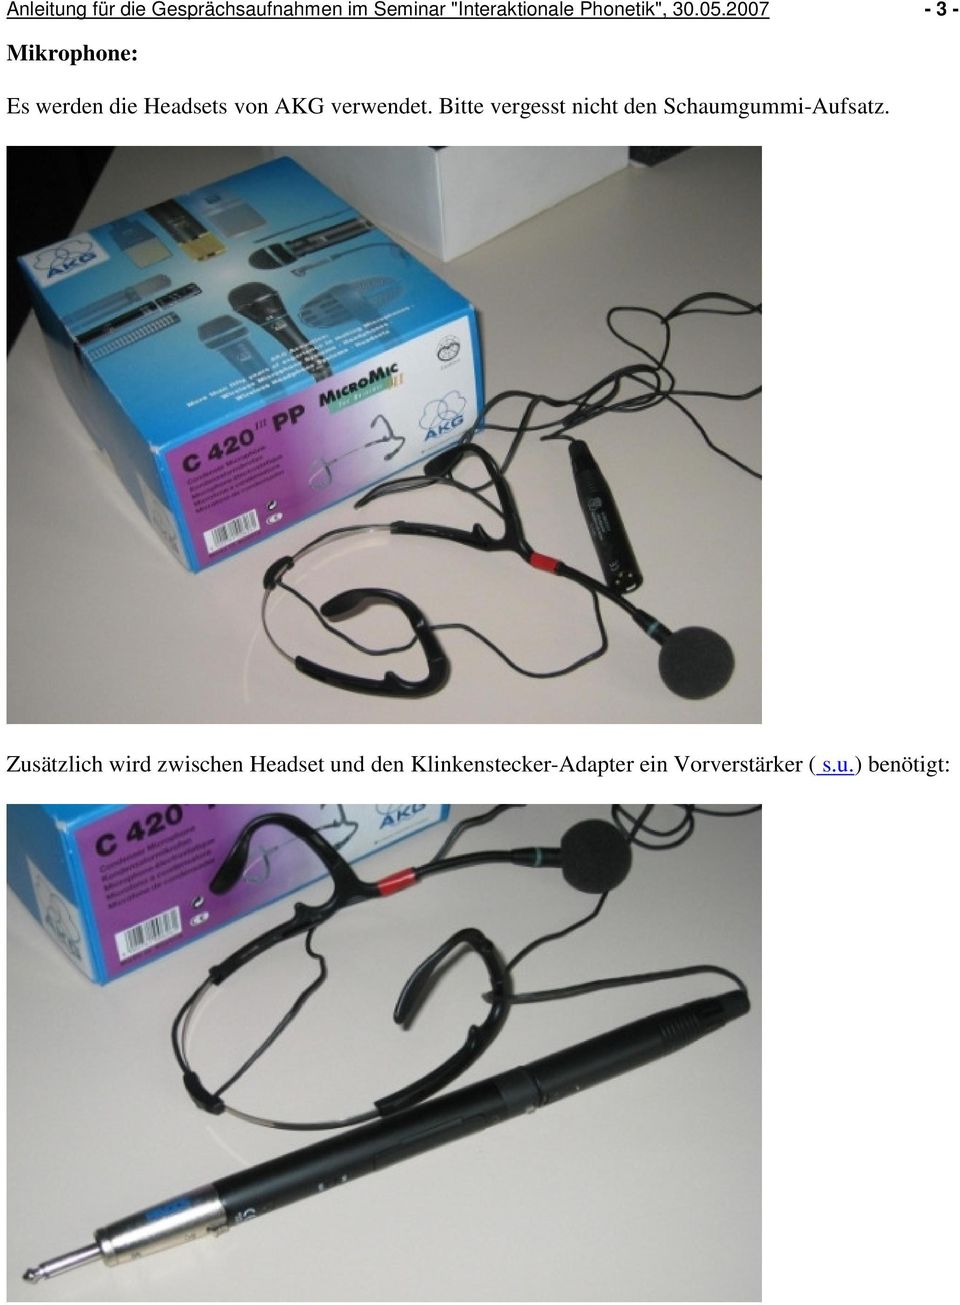 2007-3 - Mikrophone: Es werden die Headsets von AKG verwendet.